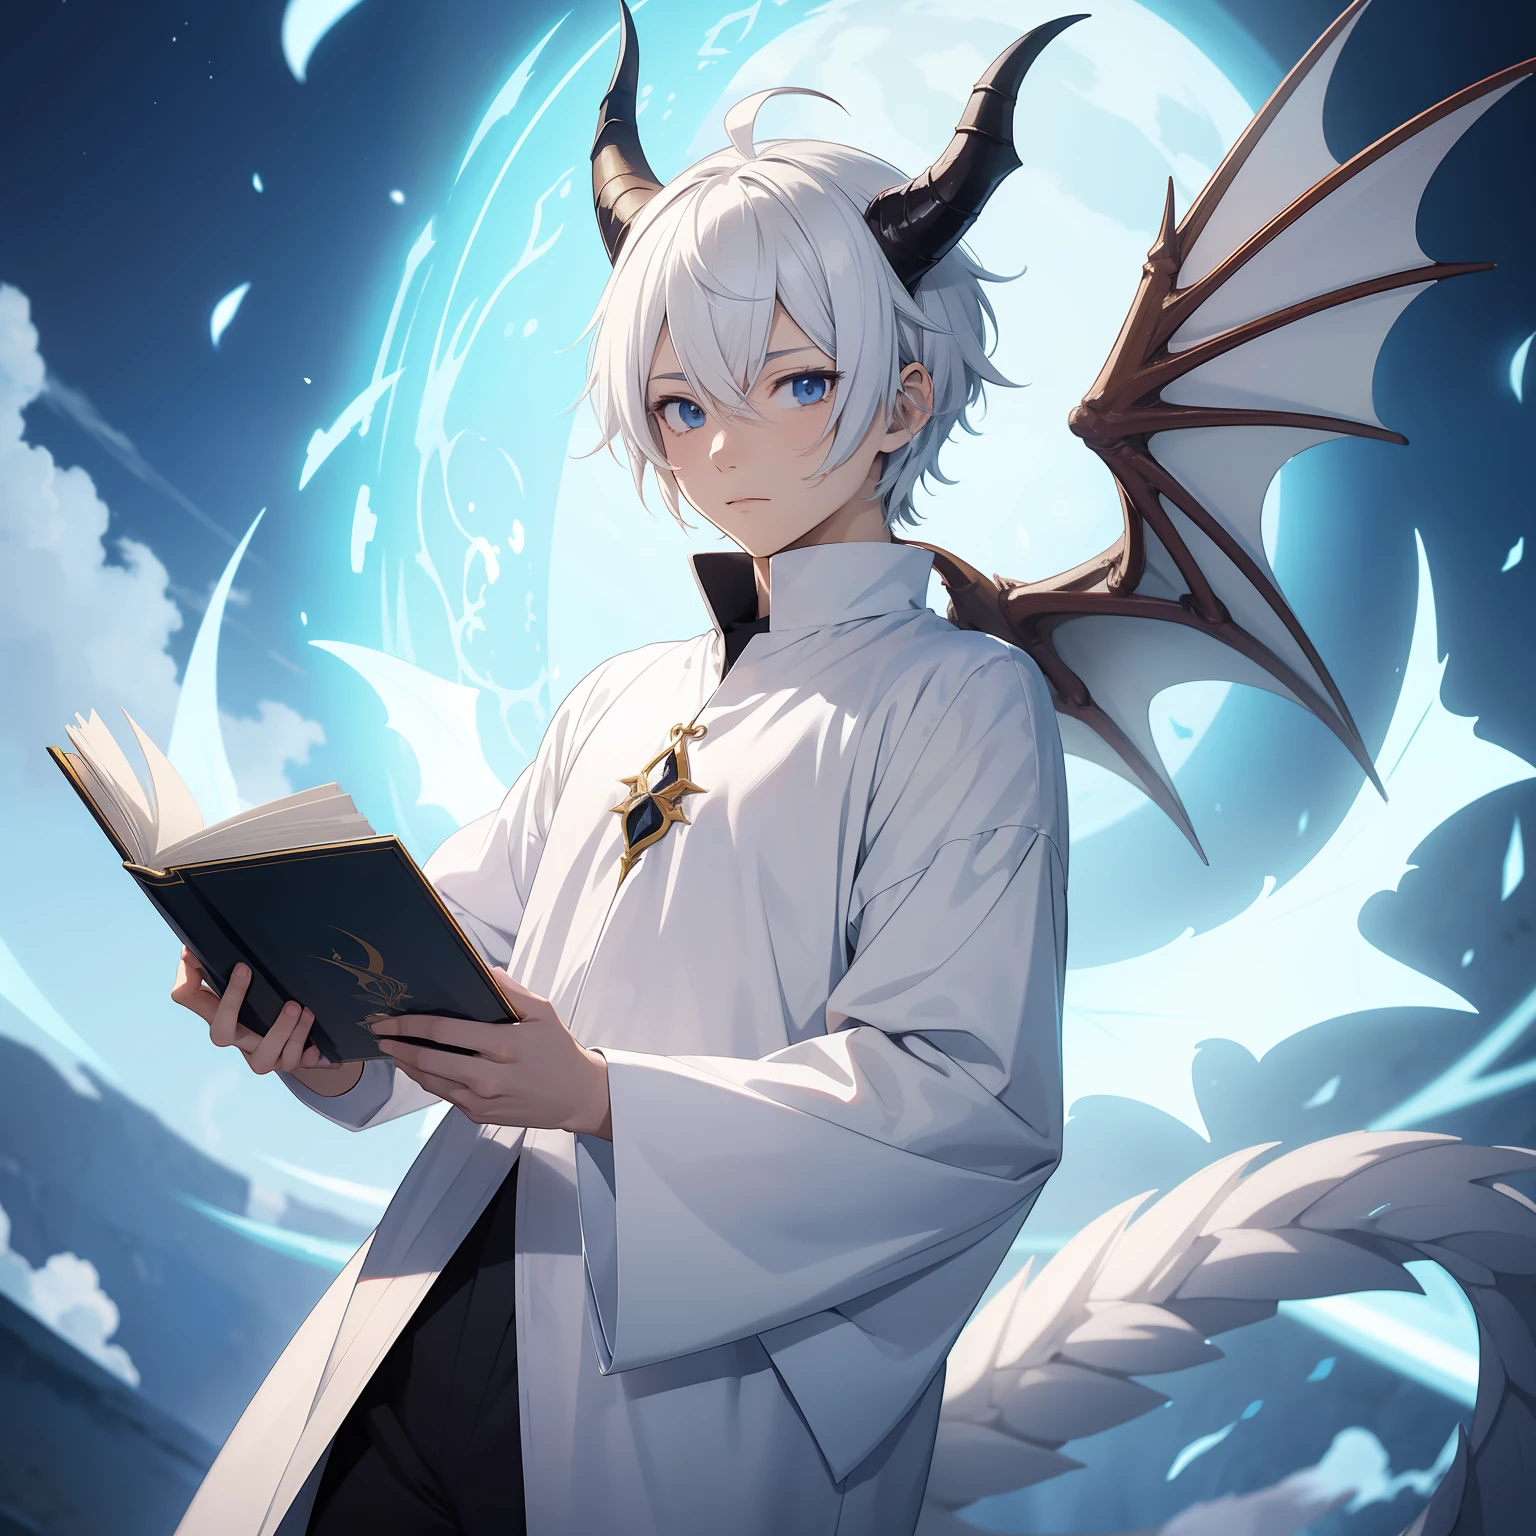 un chico anime vestido con ropa blanca de hechicero sosteniendo un libro flotante, cuernos de dragón, cola de dragón, pelo corto y blanco